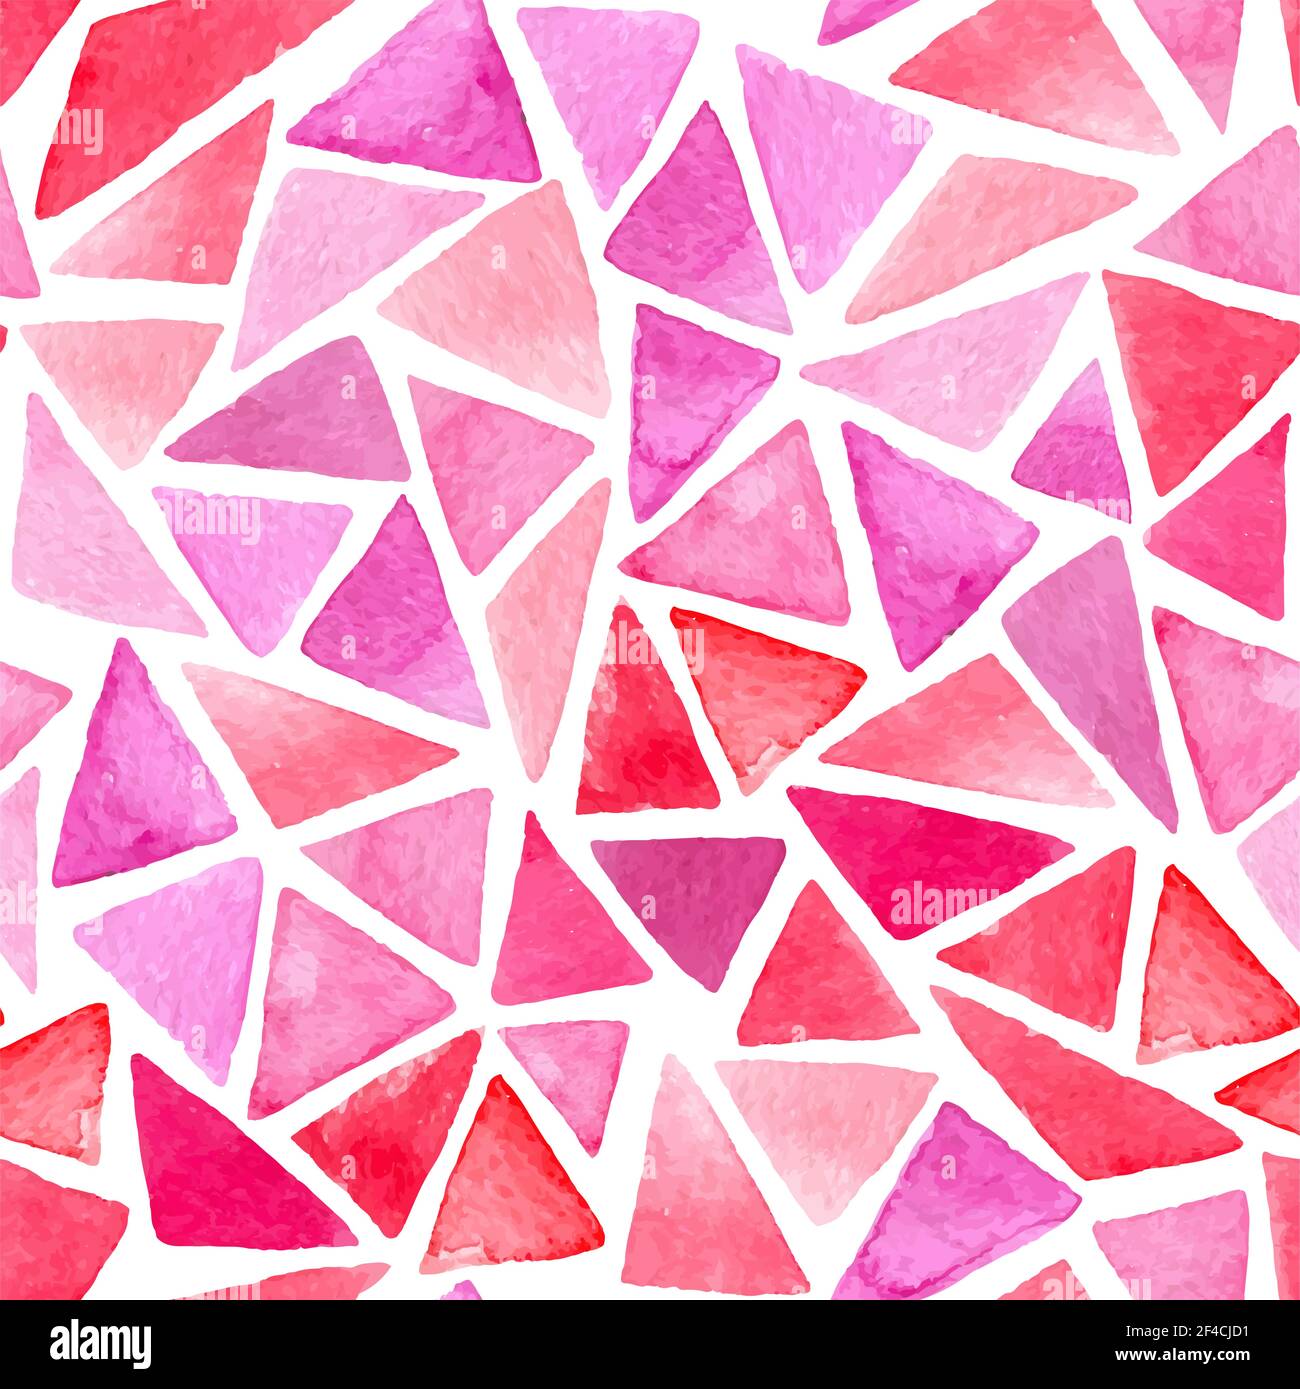 Abstrakter Vektor Aquarell Nahtloses Muster mit rosa und roten Dreiecken Auf weißem Hintergrund Stock Vektor